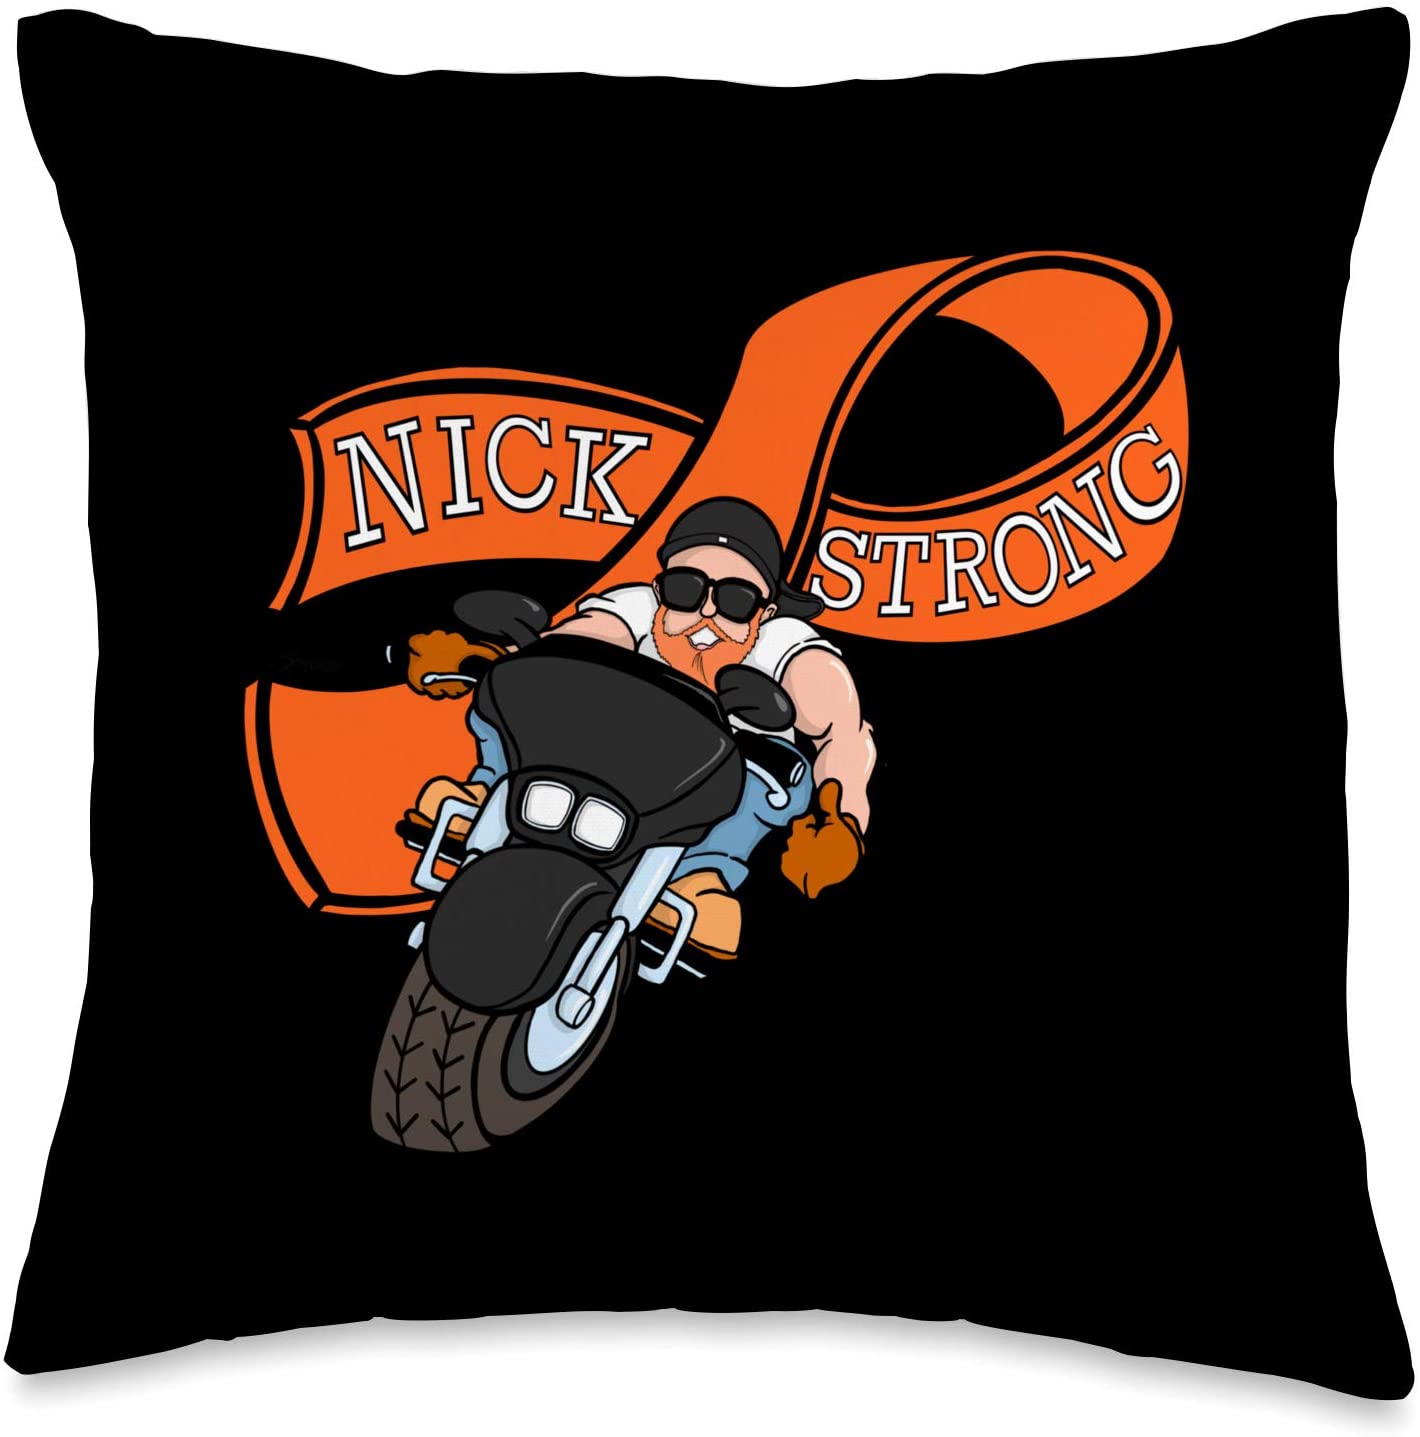 NICK STRONG Pillow